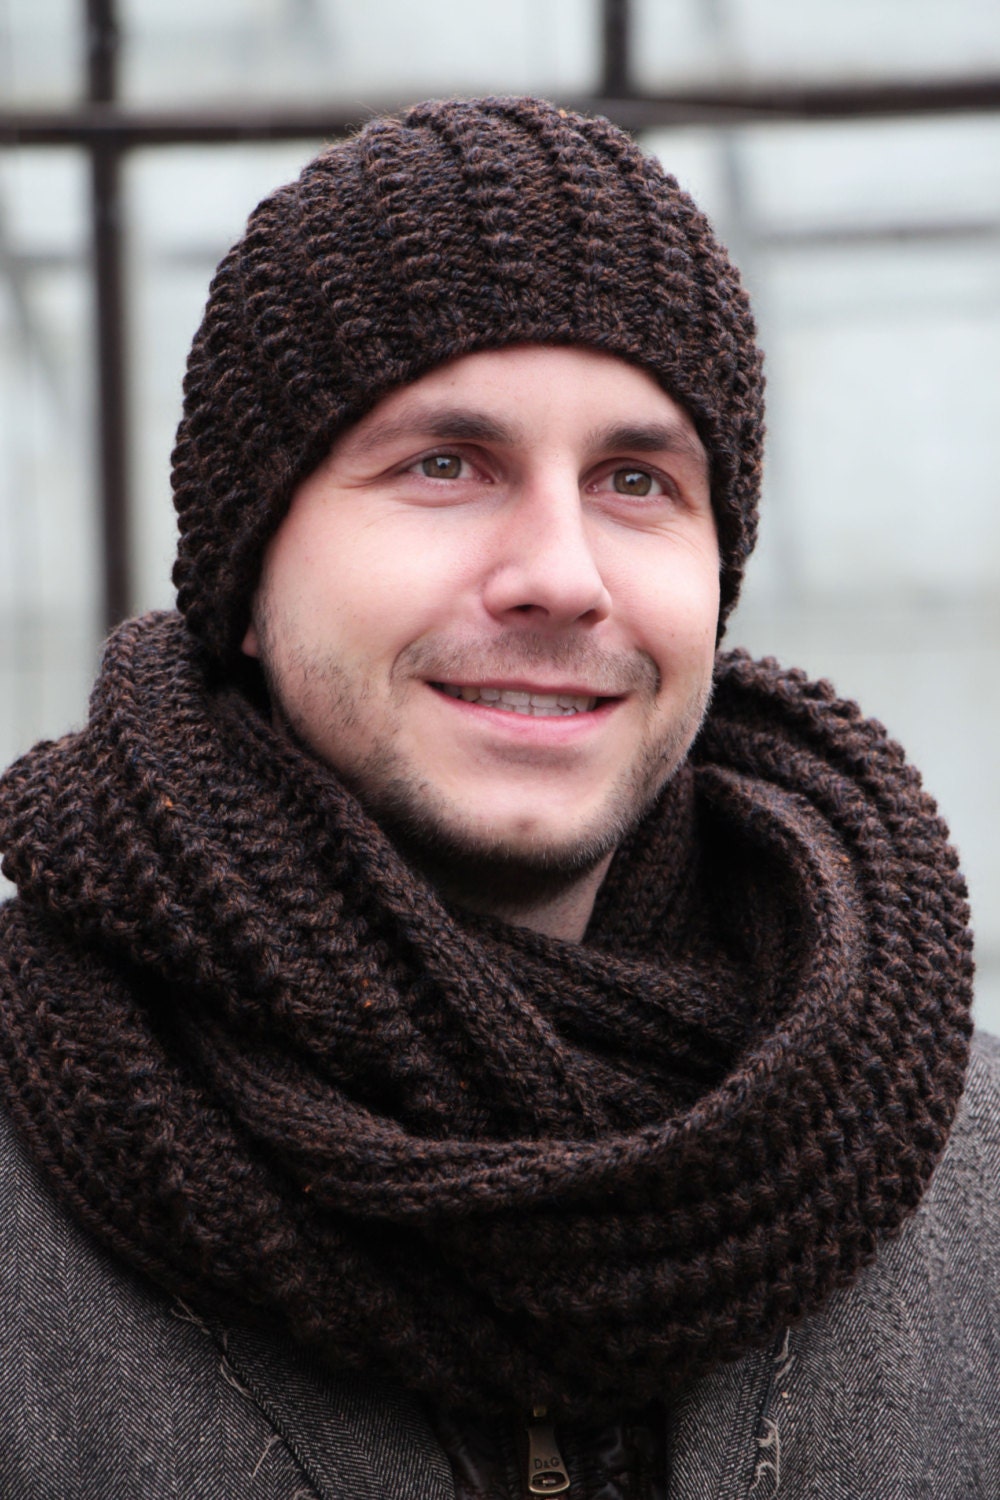 Winter hat knitwear brown men knitted beanies men warm wool | Etsy